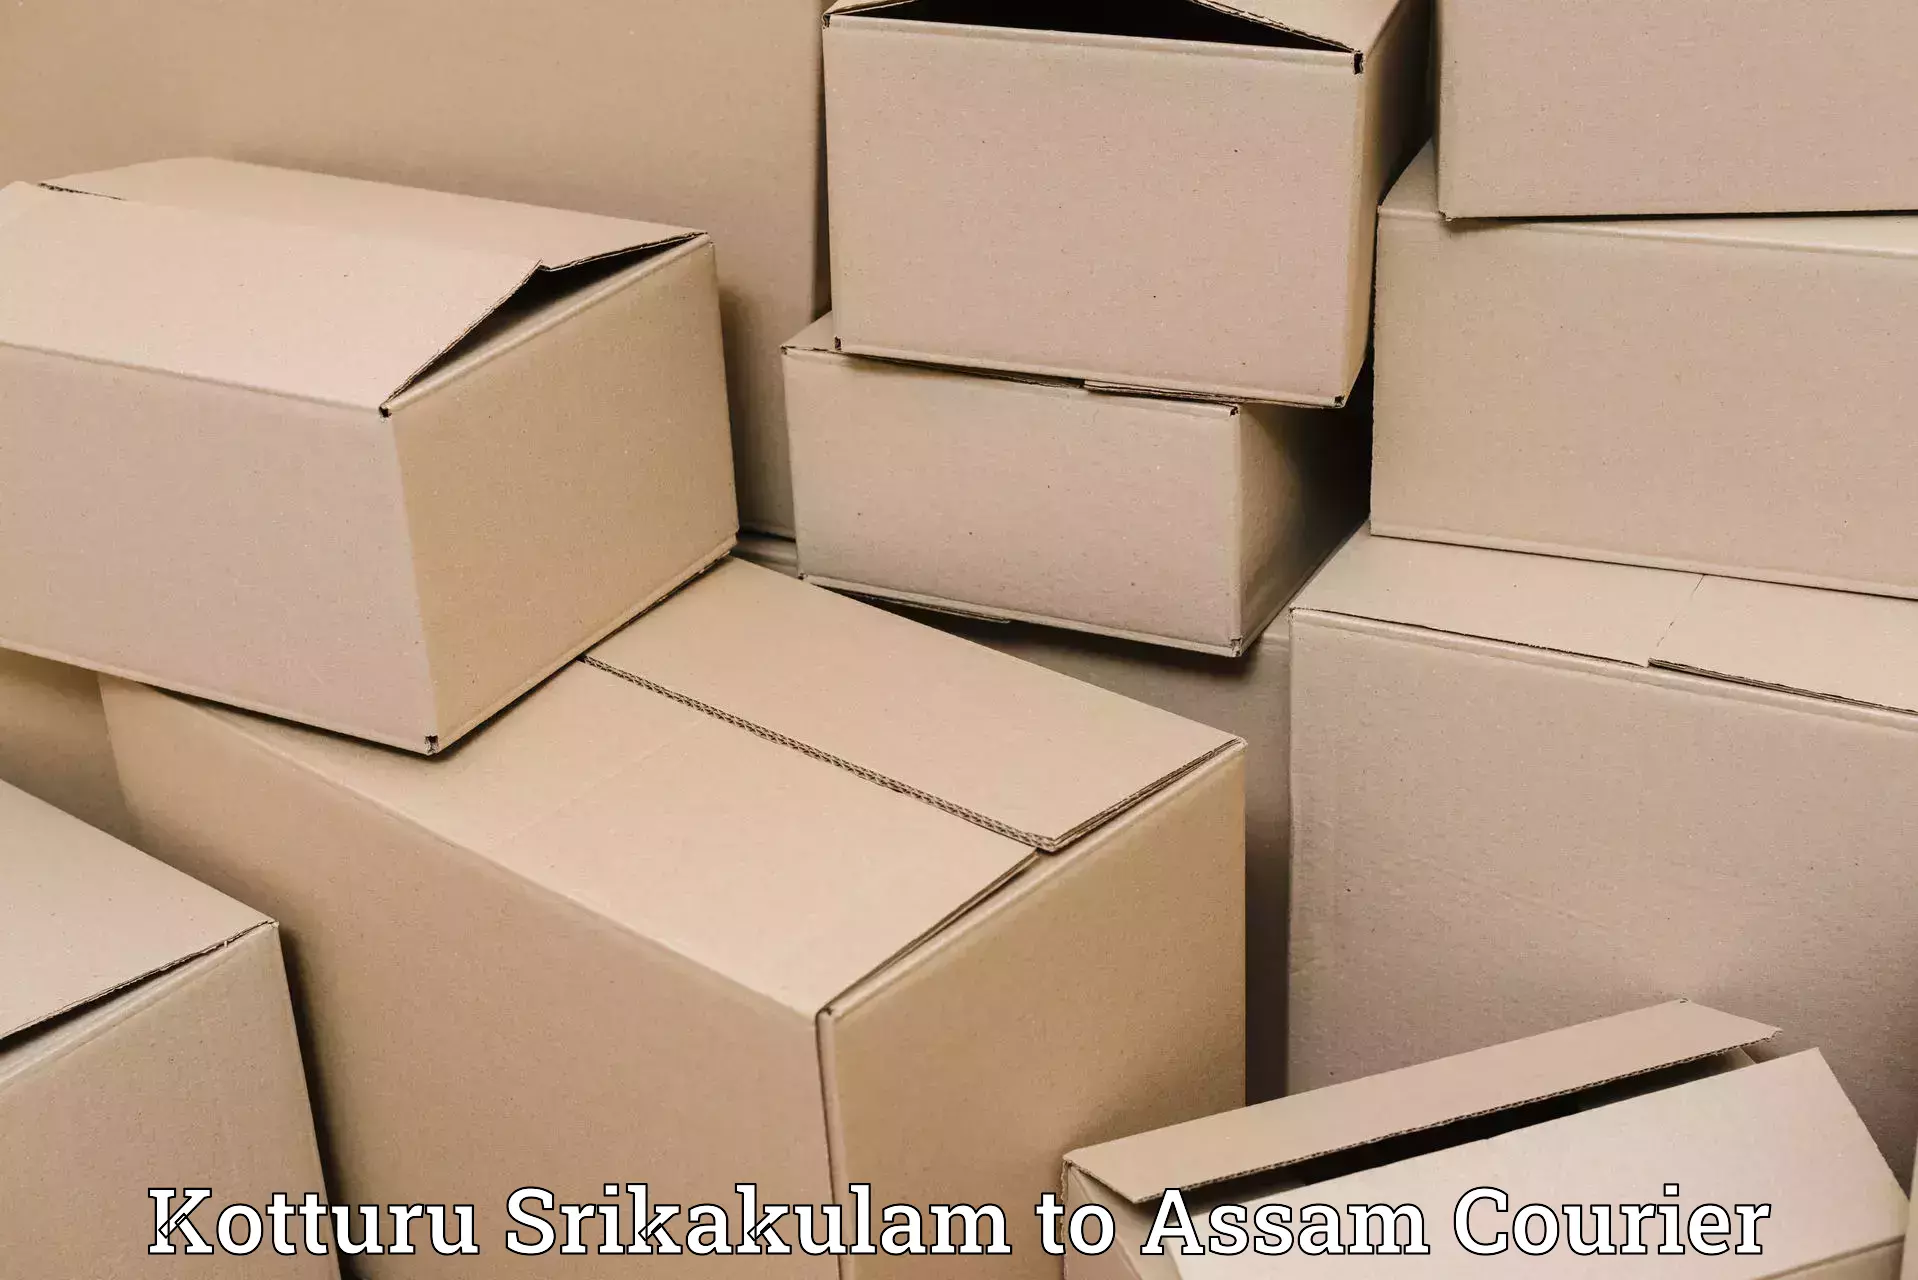 Bulk order courier Kotturu Srikakulam to Rangia